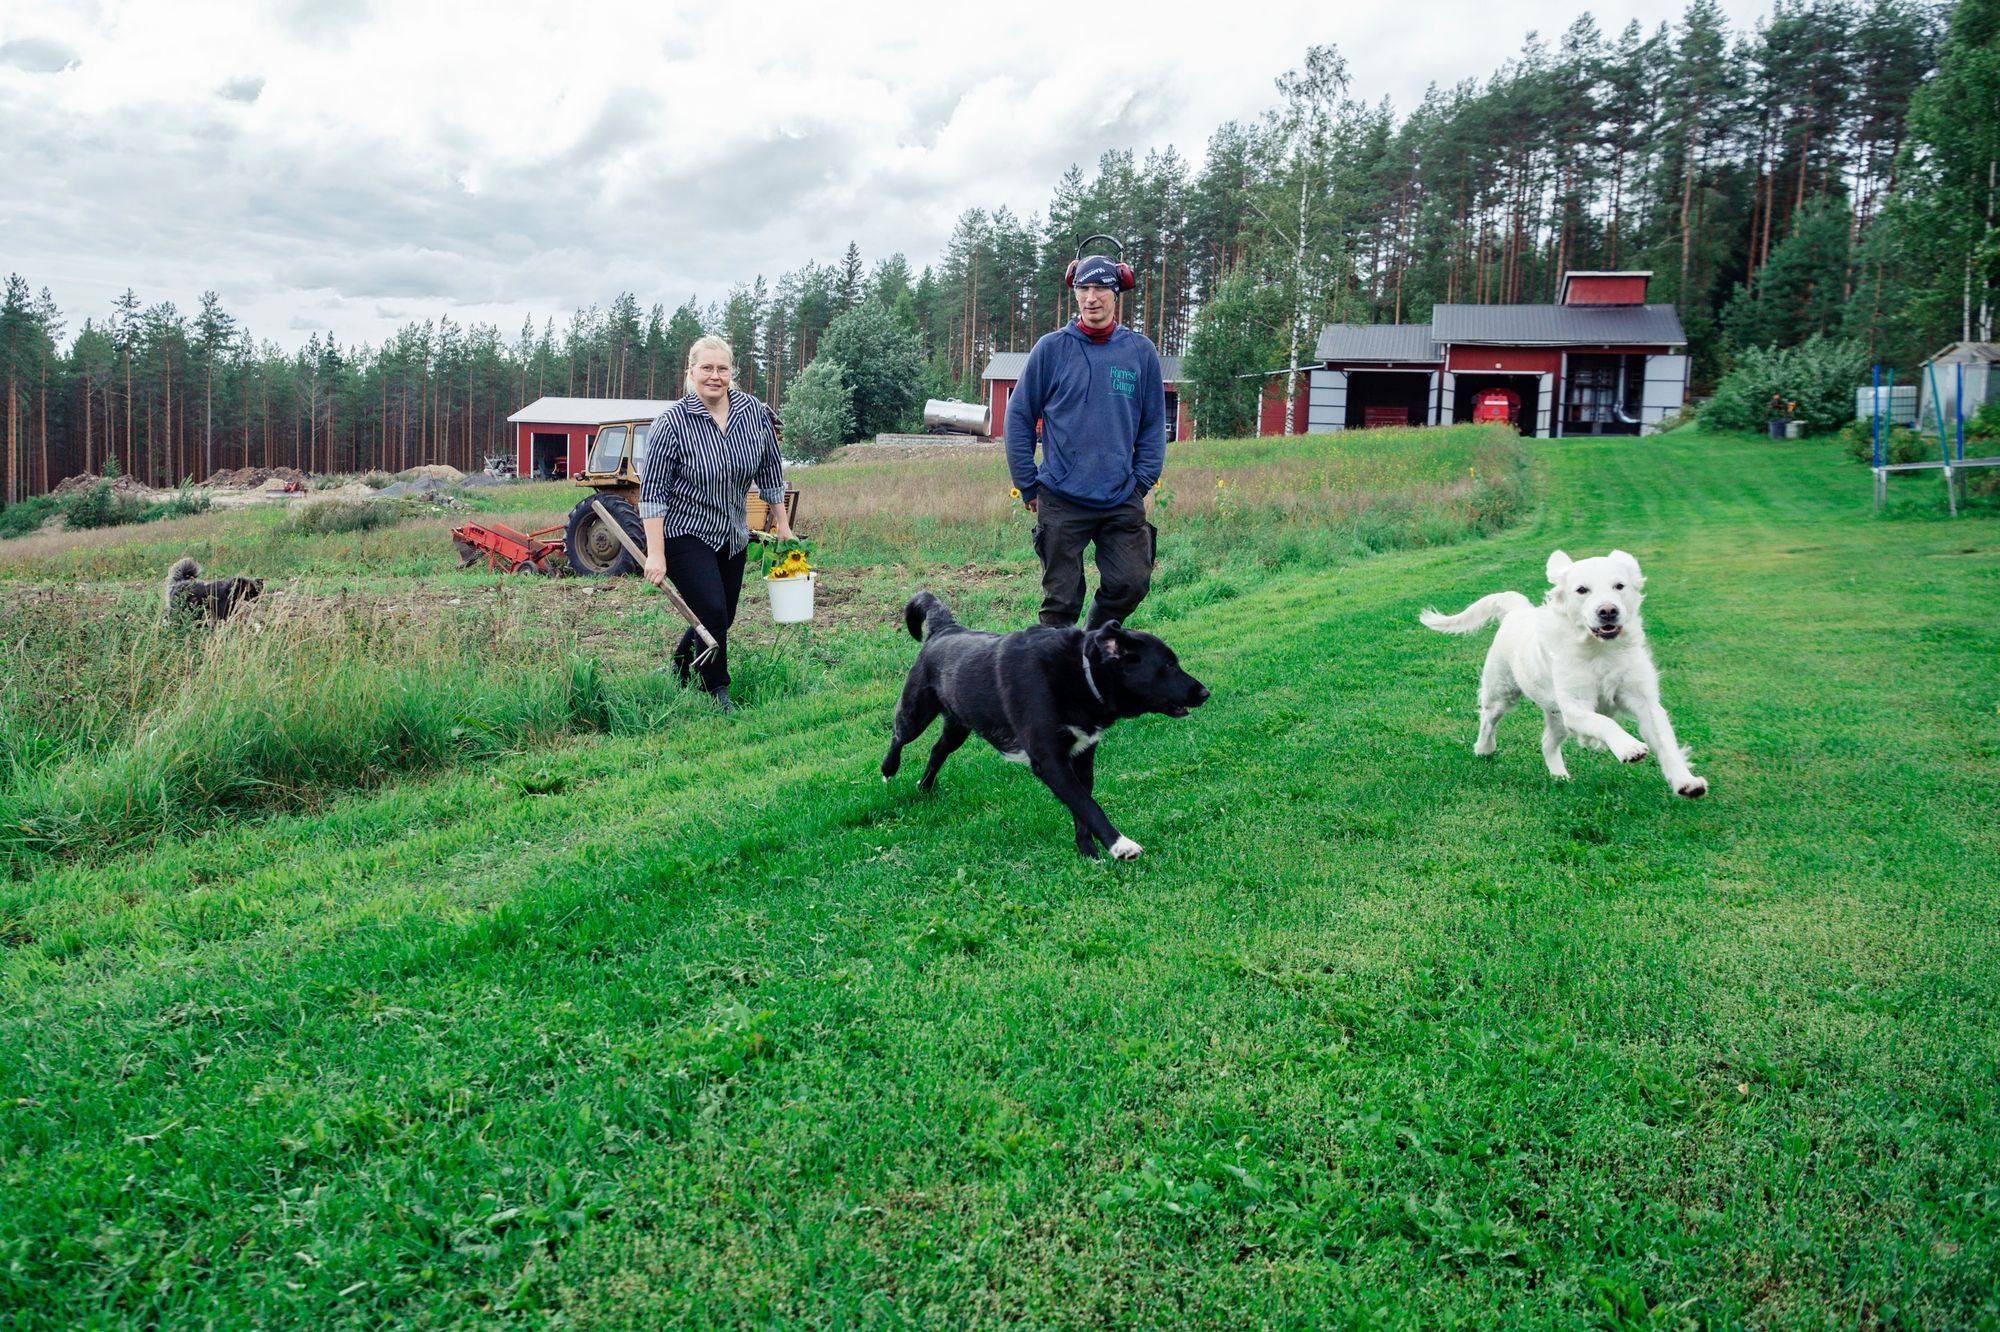 Oleg saapuu pellolta lounaalle samaa matkaa perunoita pellolta hakeneen Helenan kanssa. Koirat Mali ja Cara seuraavat. © Pihla Liukkonen